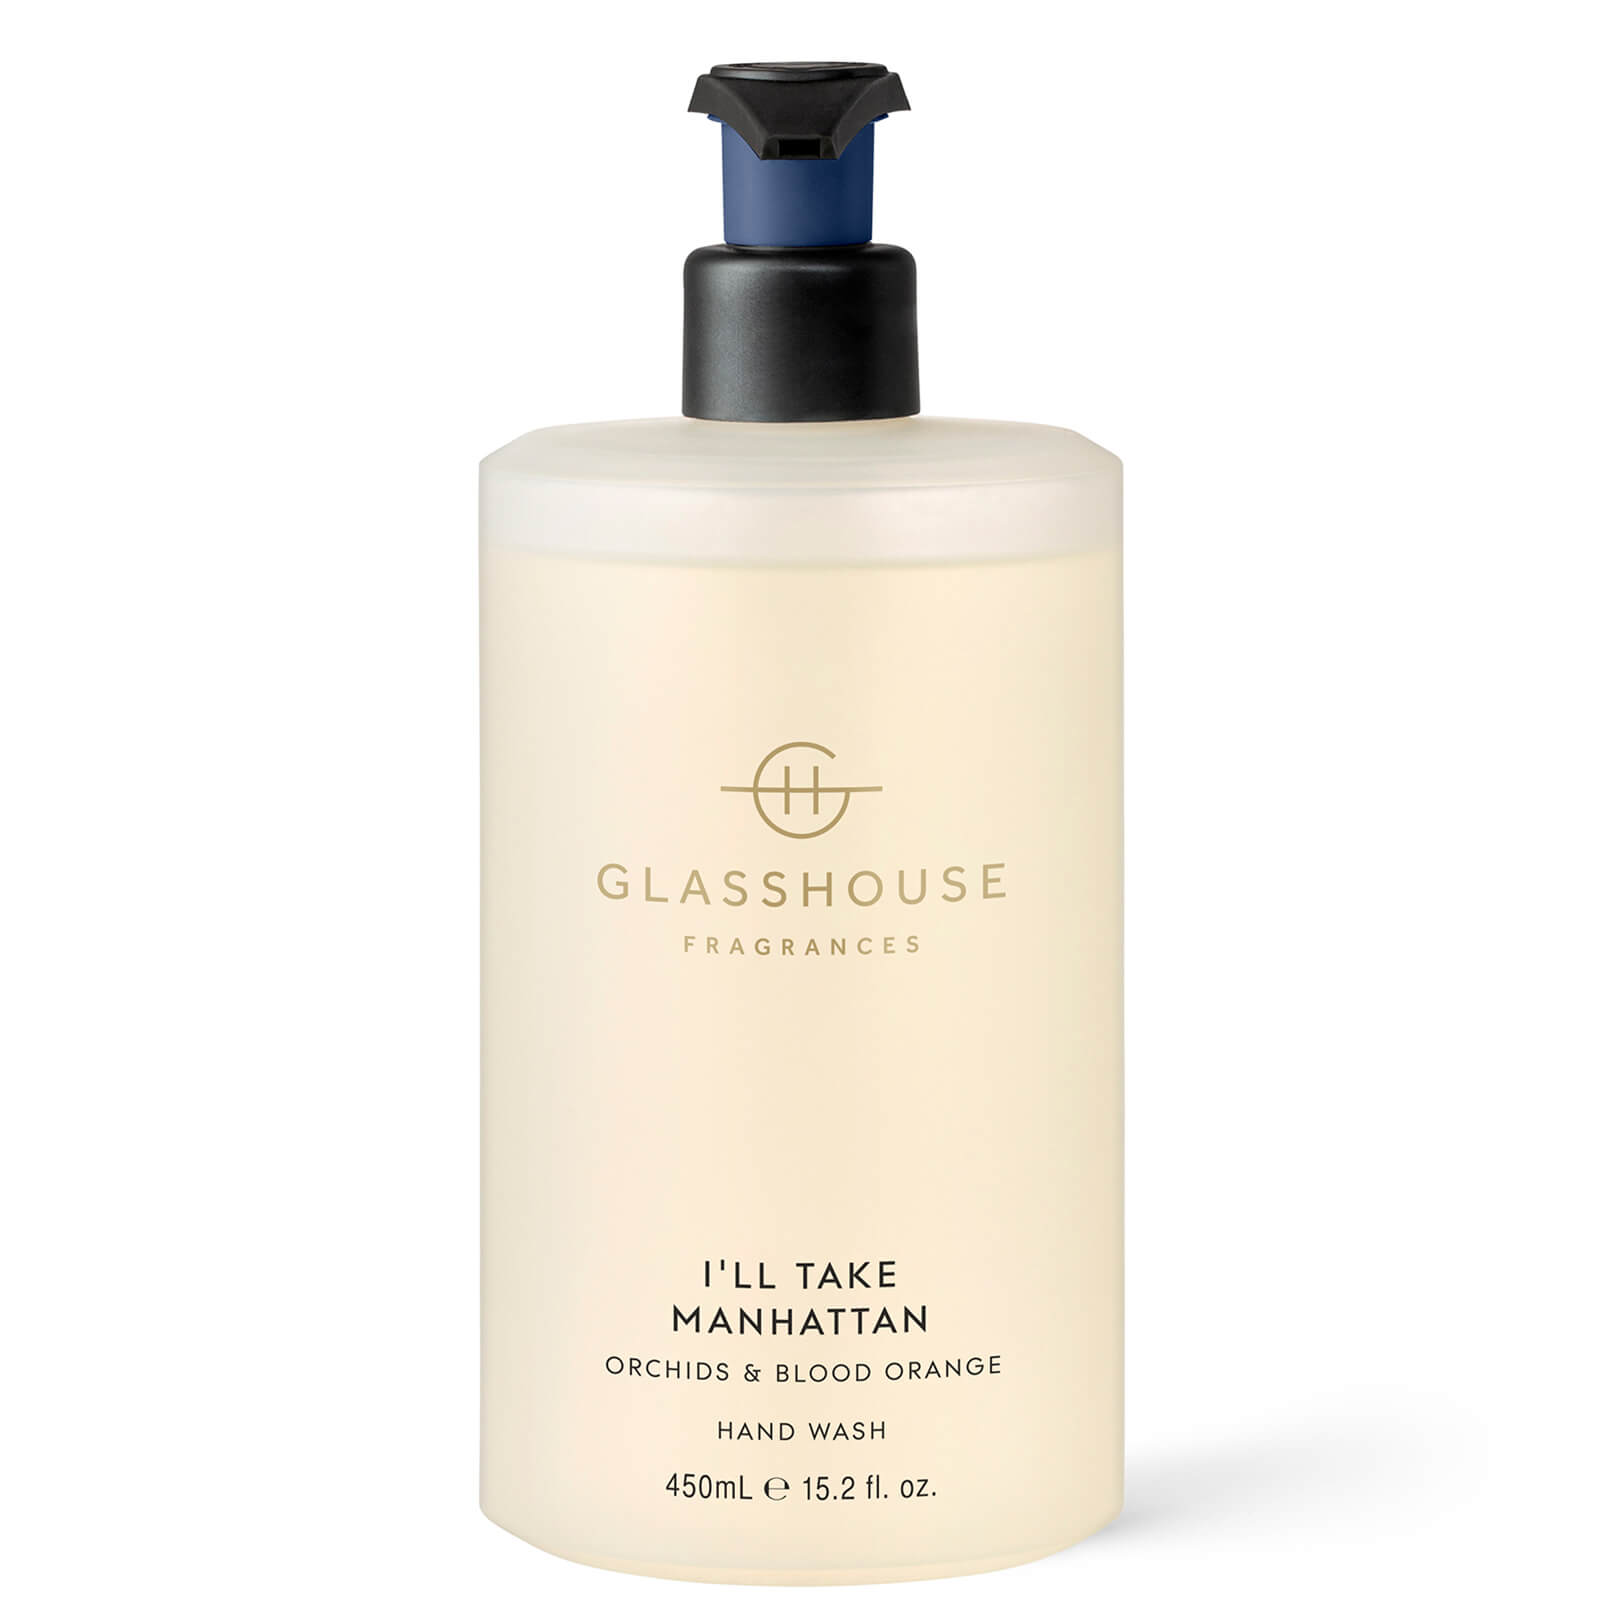 Glasshouse Fragrances Glasshouse I'll Take Manhattan Hand Wash 450ml